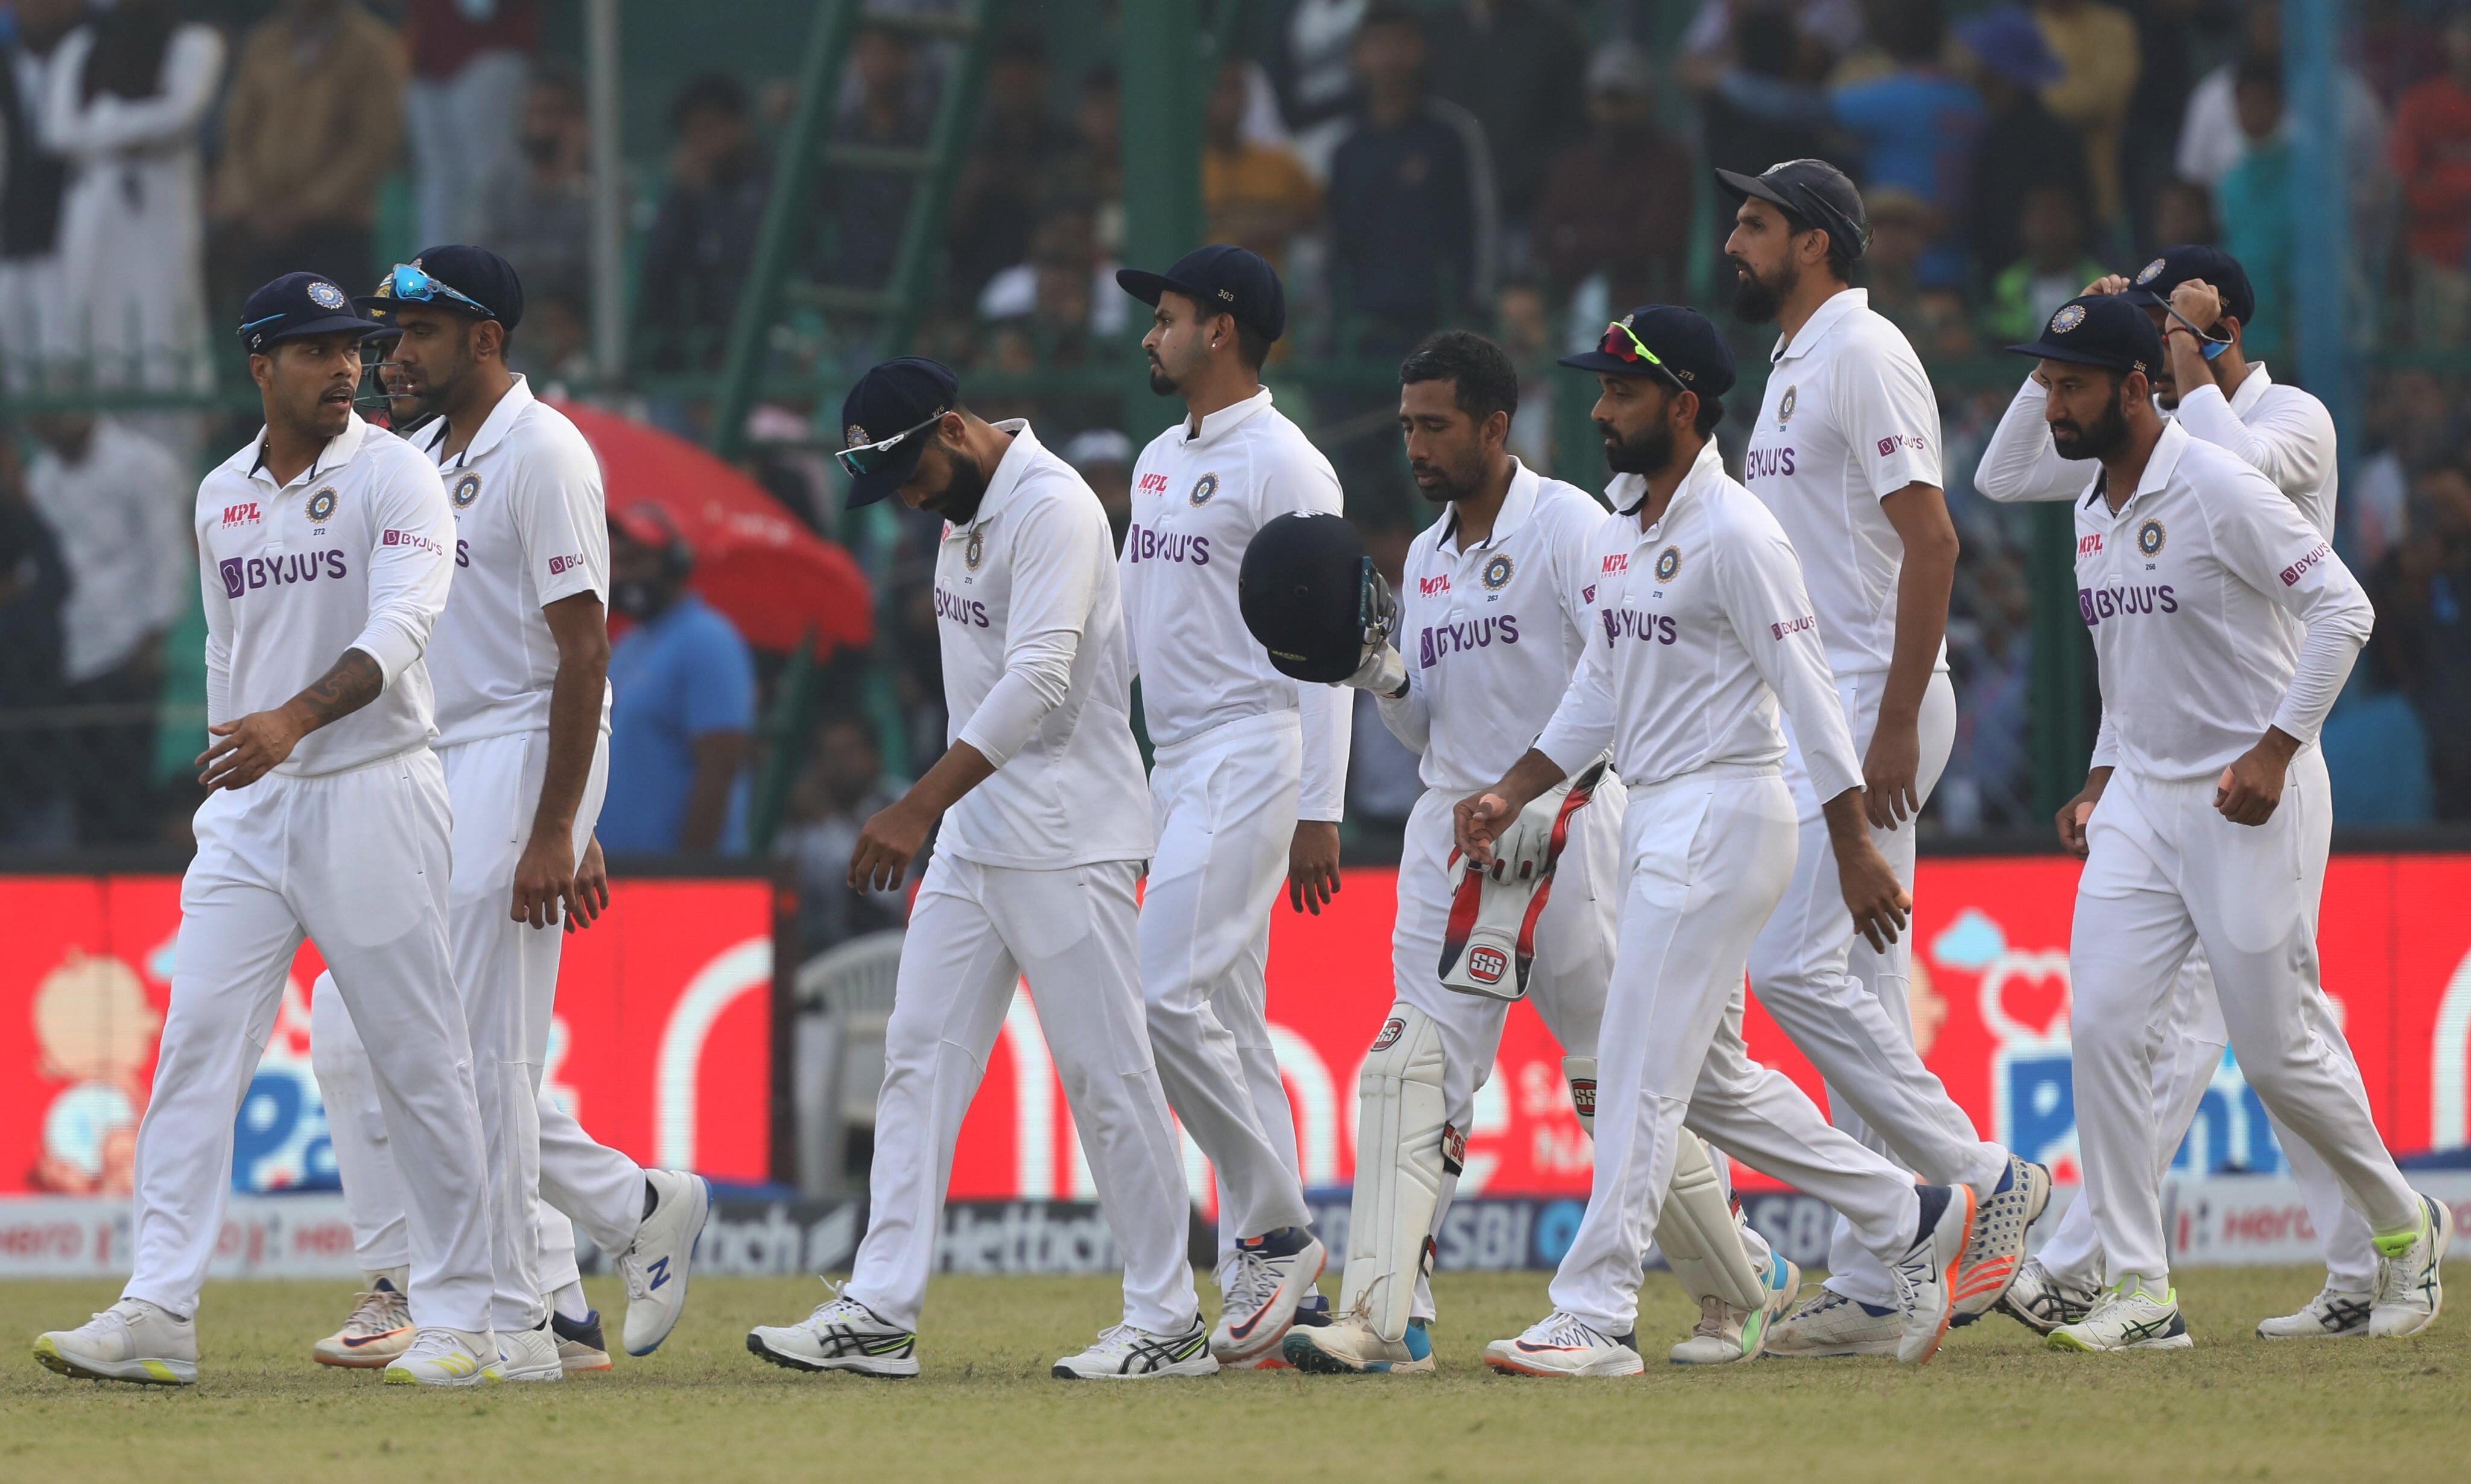 भारत के हाथ से निकली जीत, आखिरी गेंदों में नहीं ले सके 1 विकेट